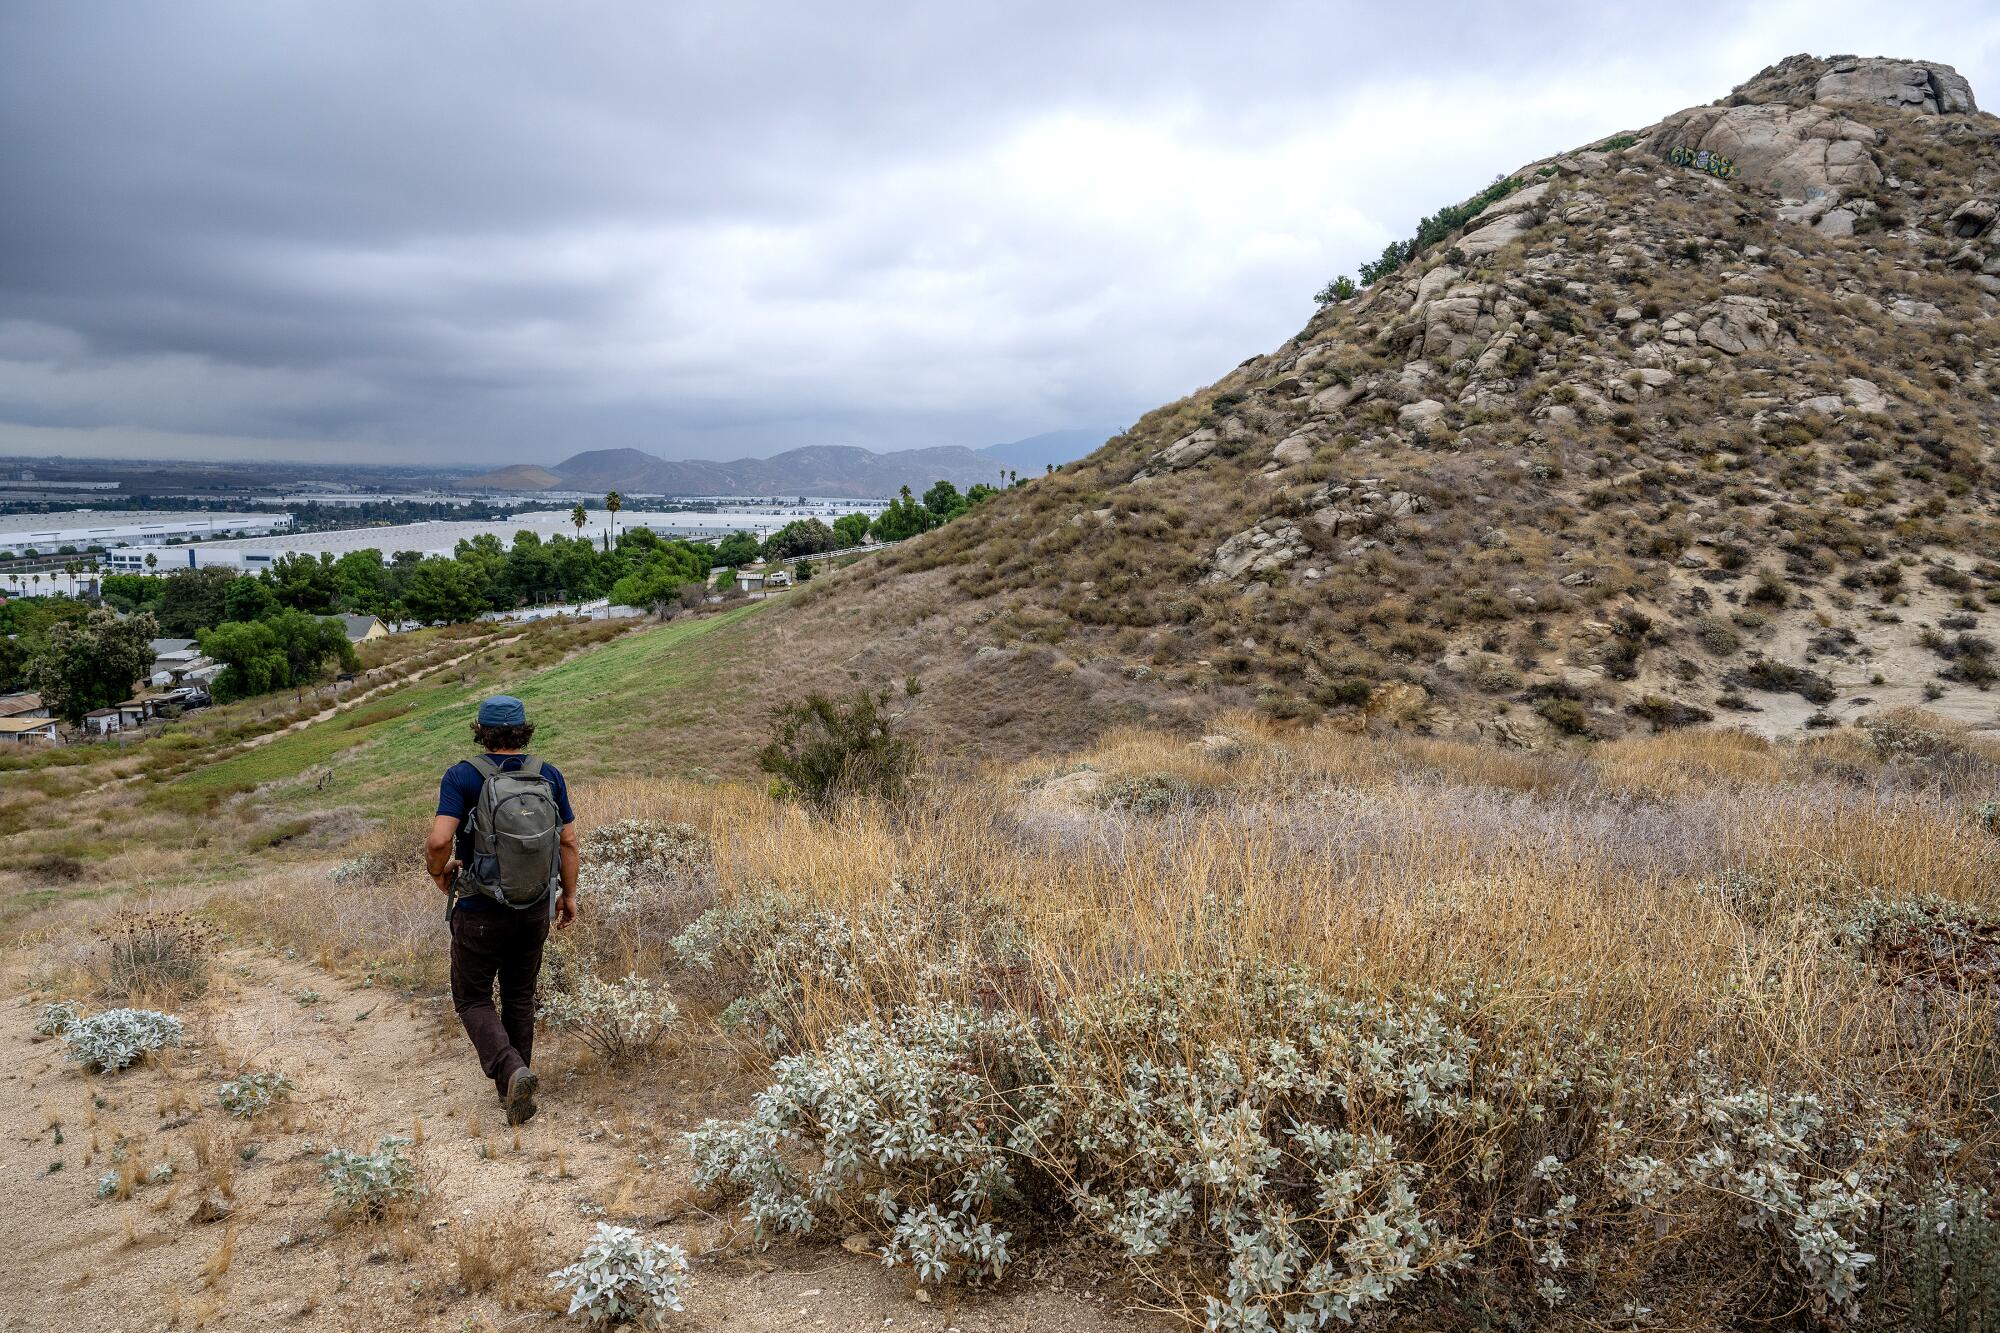 A man walks along a dirt path beside a hill.